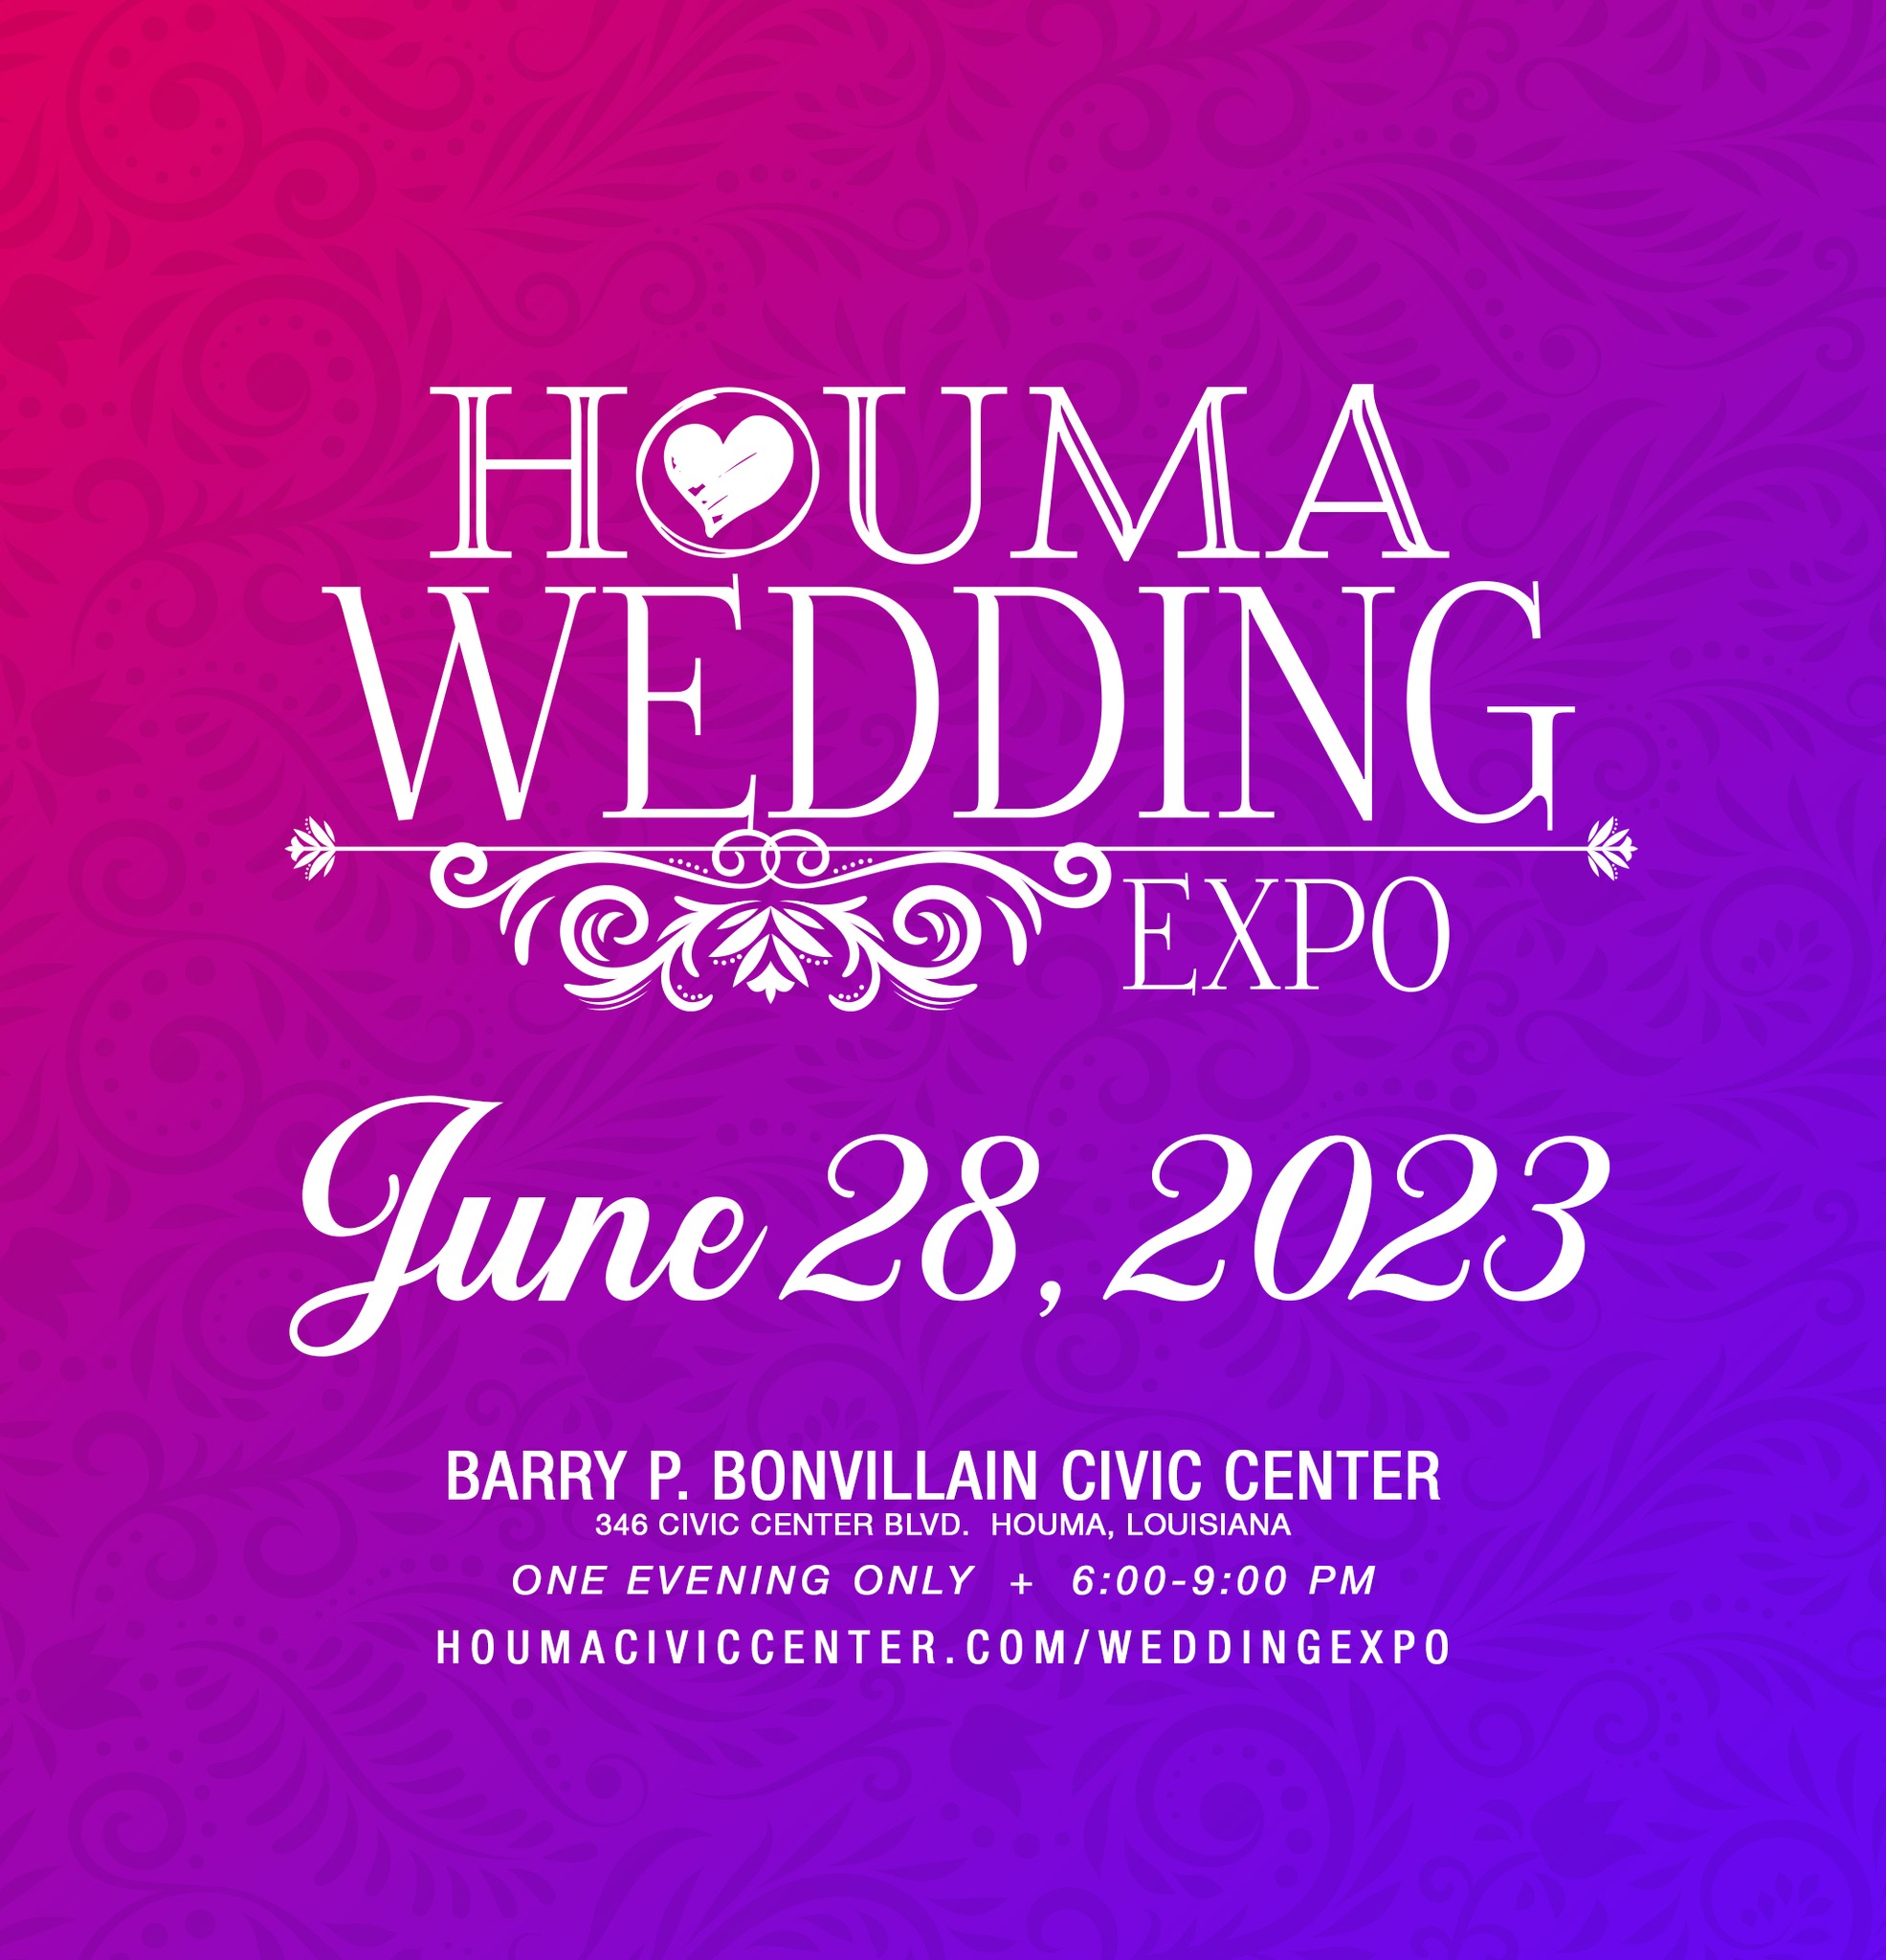 Houma Wedding Expo Visit HoumaTerrebonne, LA